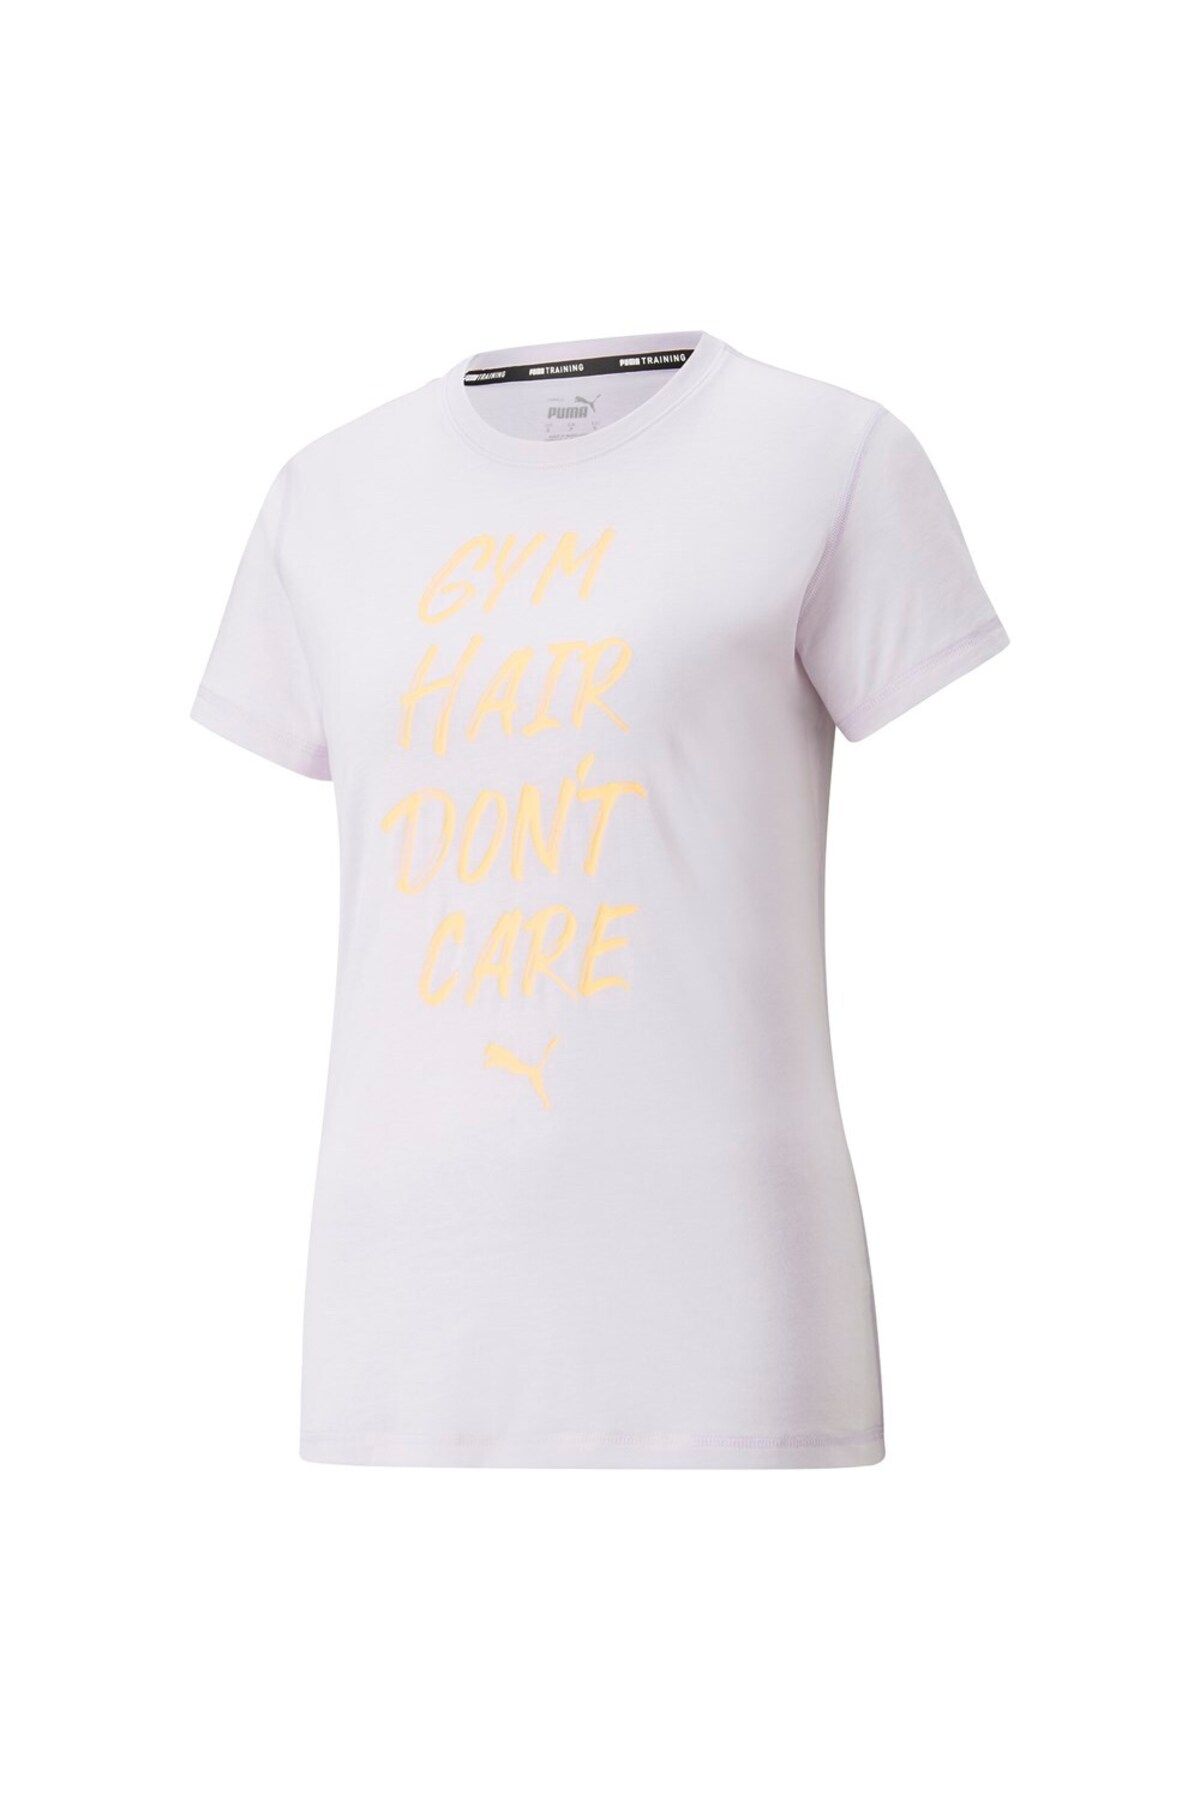 Puma Performance Empowerment Slogan (EVERSCULPT CONNECTİON) Kadın T-shirt